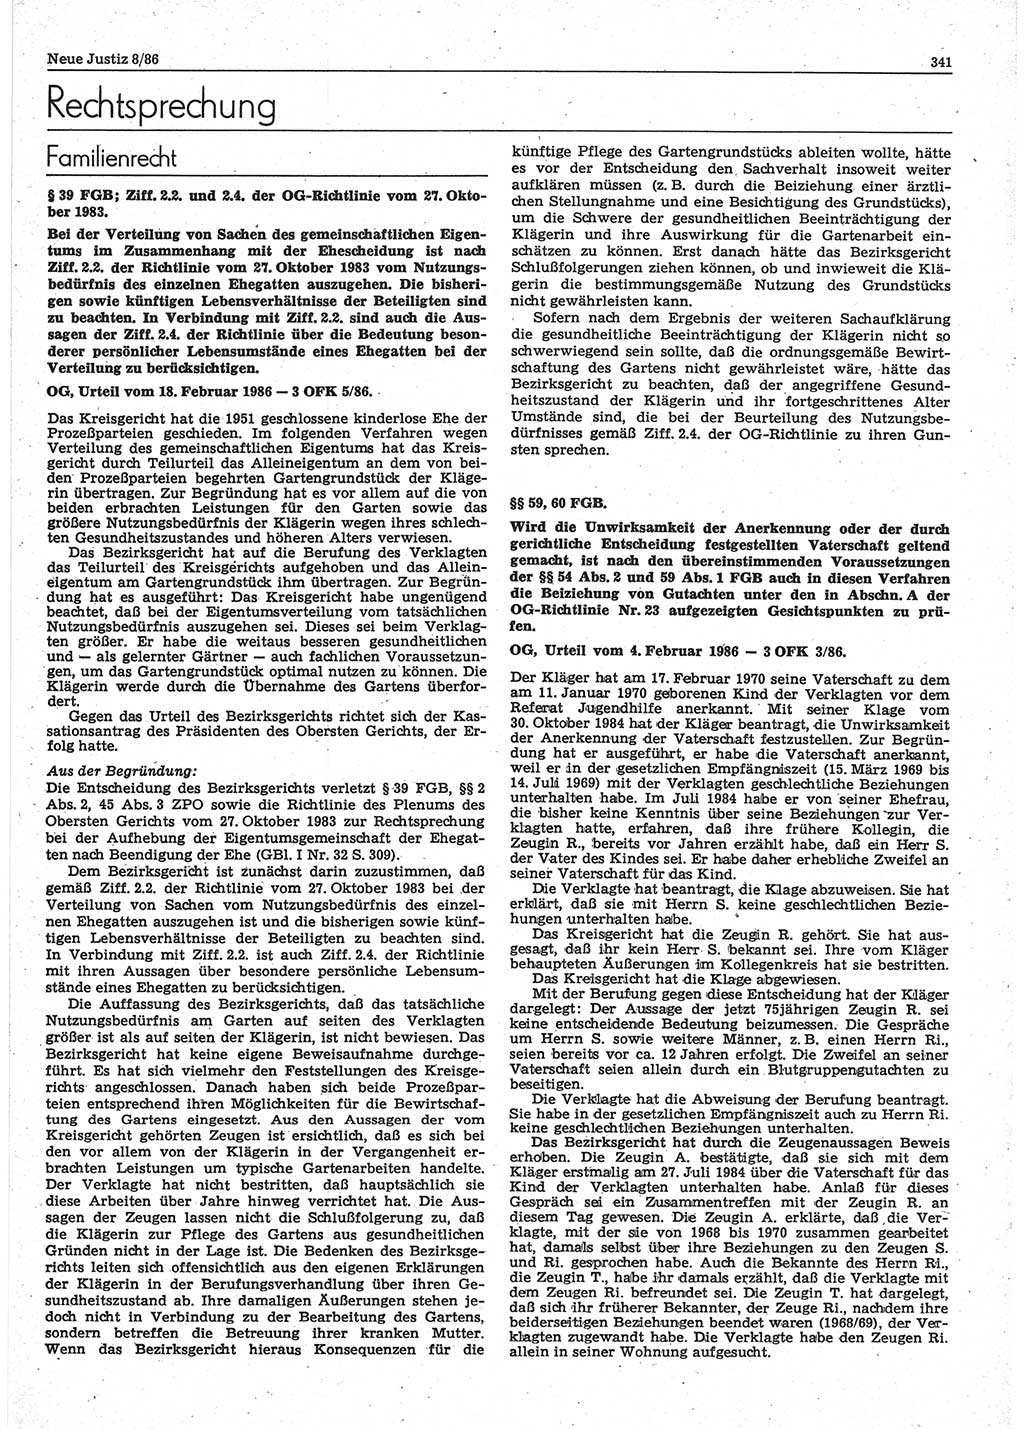 Neue Justiz (NJ), Zeitschrift für sozialistisches Recht und Gesetzlichkeit [Deutsche Demokratische Republik (DDR)], 40. Jahrgang 1986, Seite 341 (NJ DDR 1986, S. 341)